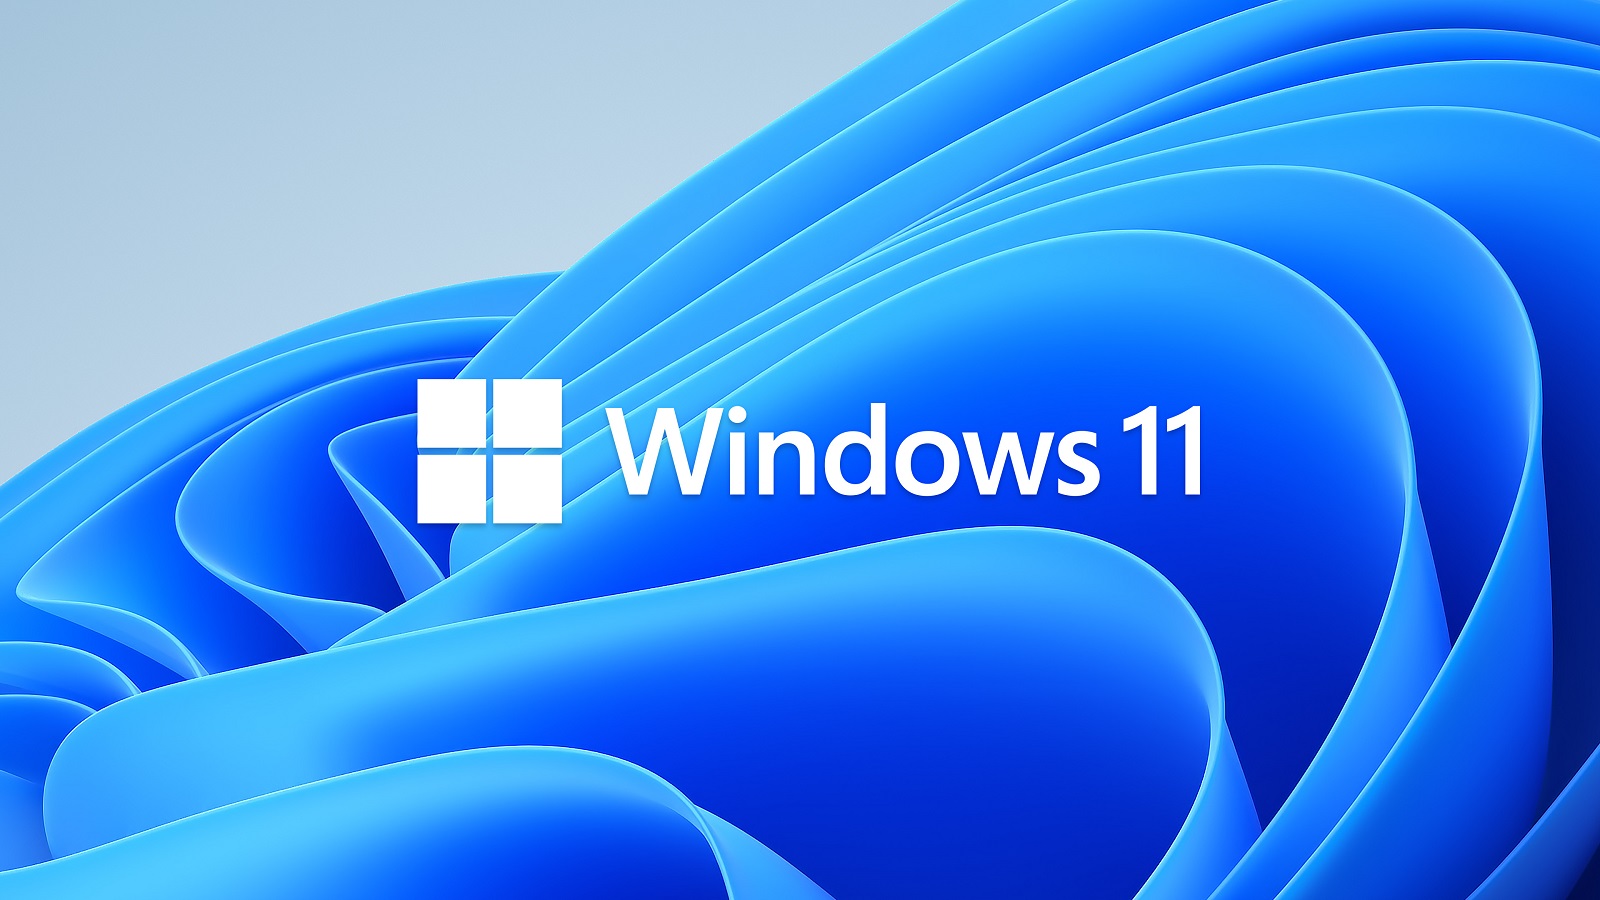 Αυτές είναι οι σημαντικότερες λειτουργίες που θα αφαιρεθούν από τα Windows 11